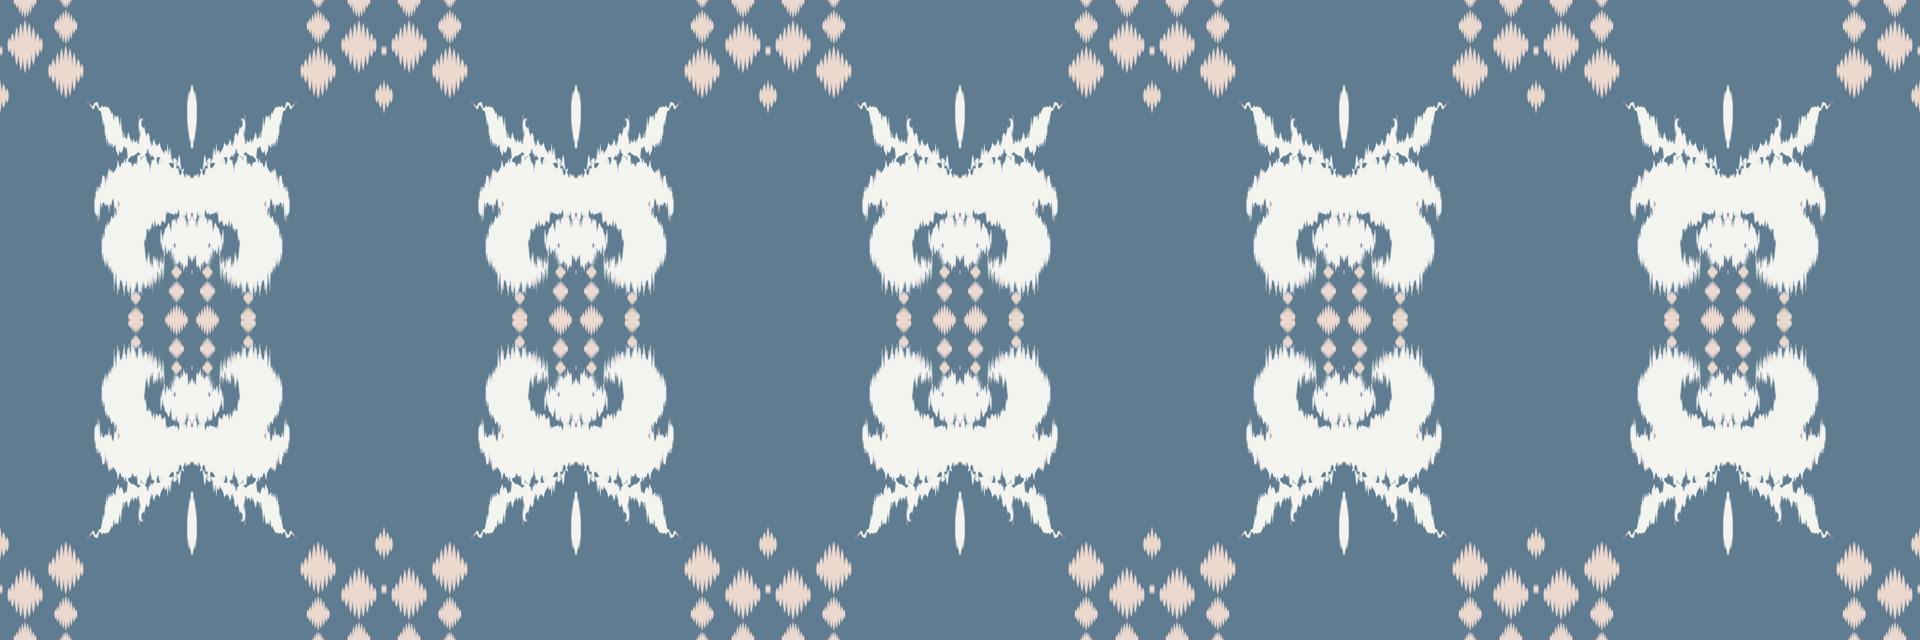 motivo textil batik ikat triángulo patrón sin costuras diseño de vector digital para imprimir saree kurti borneo borde de tela símbolos de pincel muestras diseñador